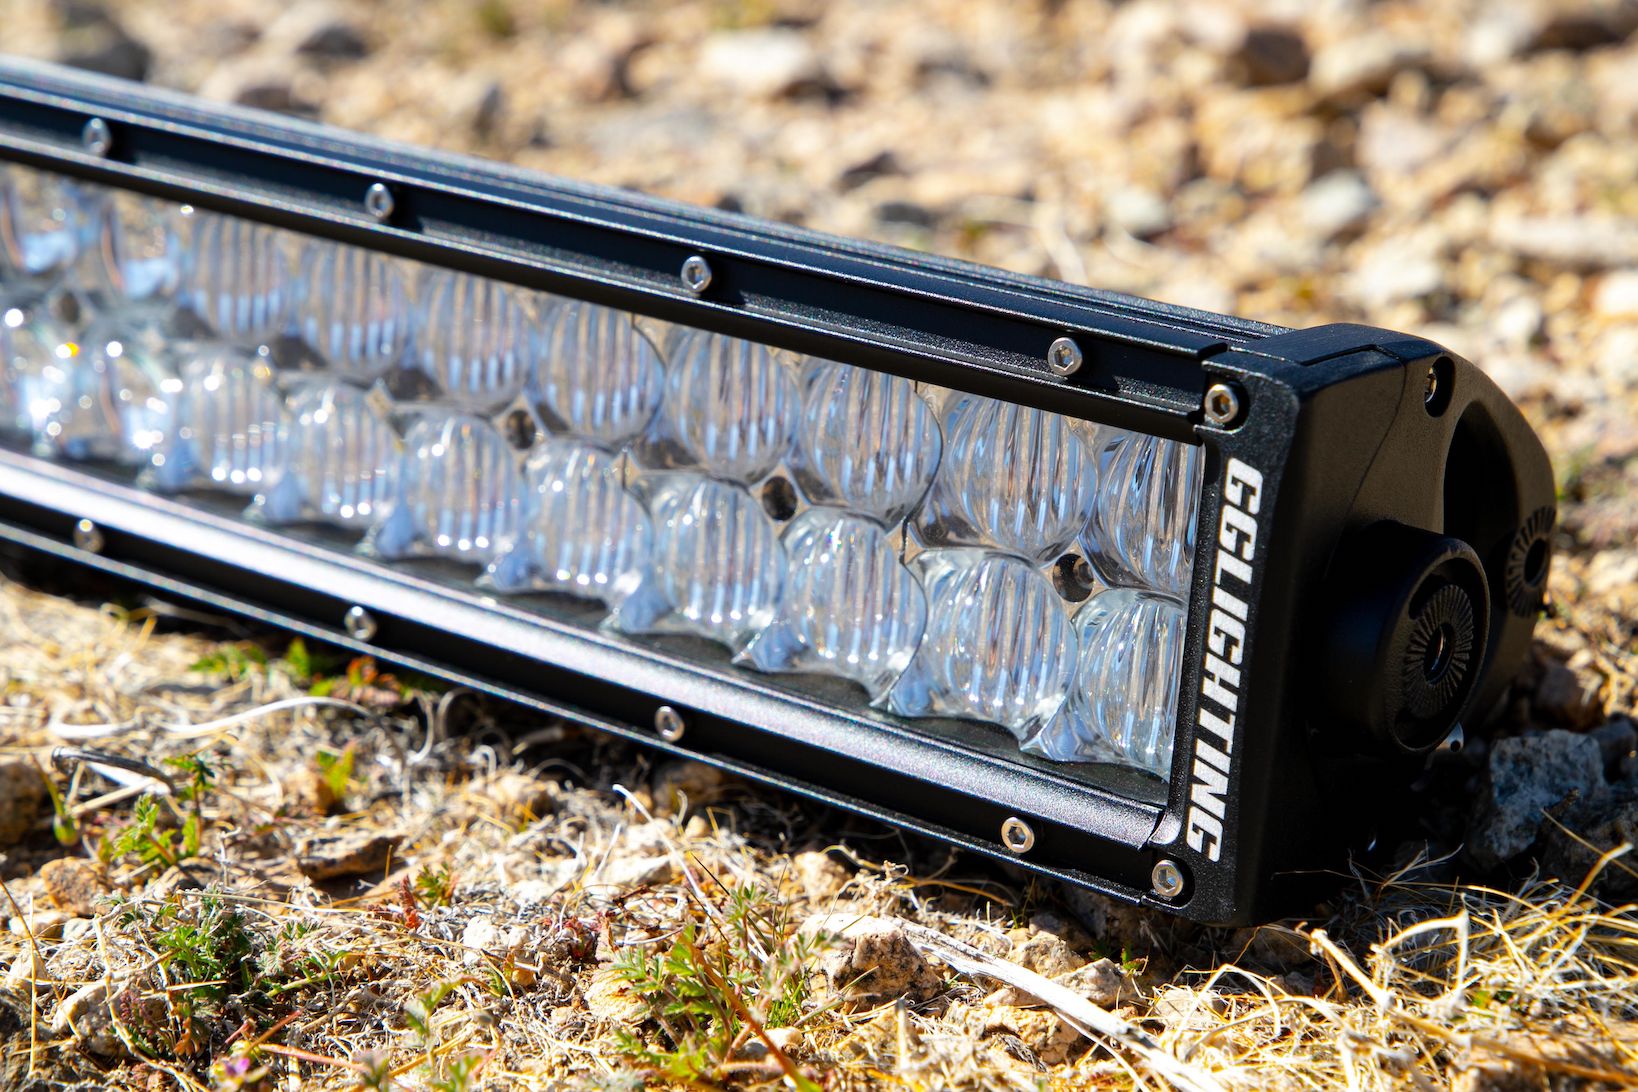 50" LED Light bar off road desert gg lighting